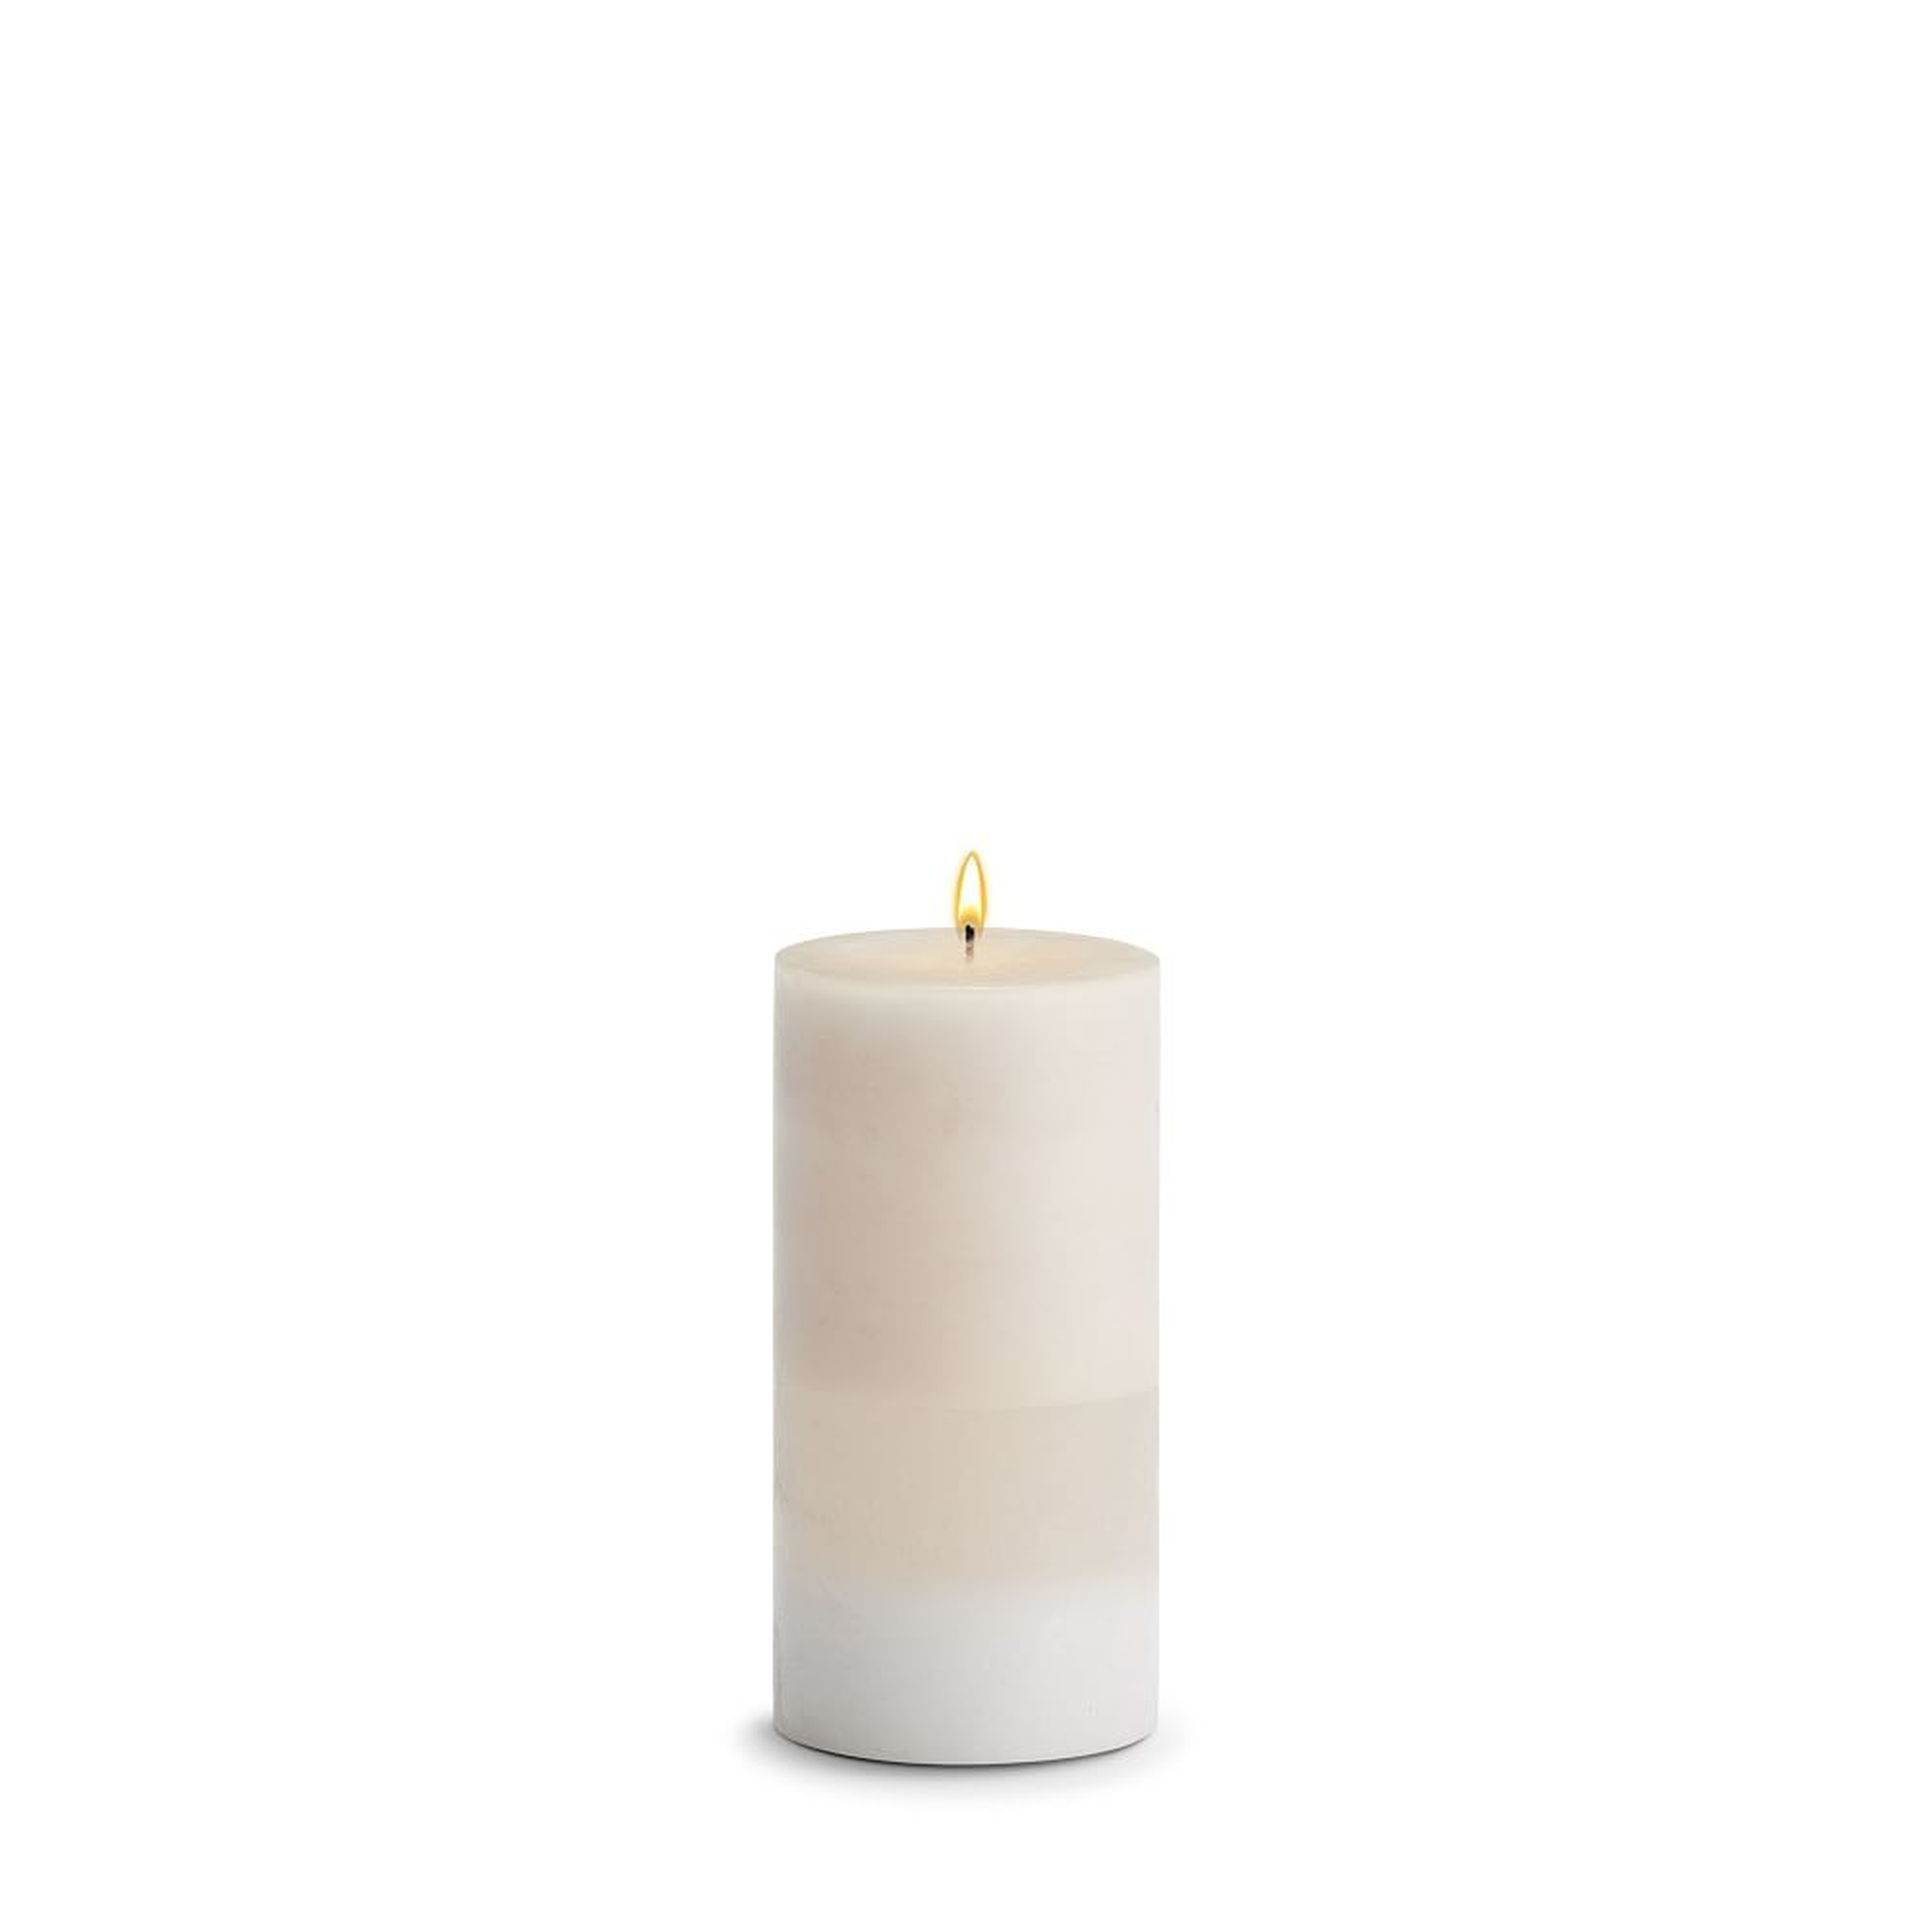 Pillar Candle, Wax, Amber Rose, 3"x6" - West Elm